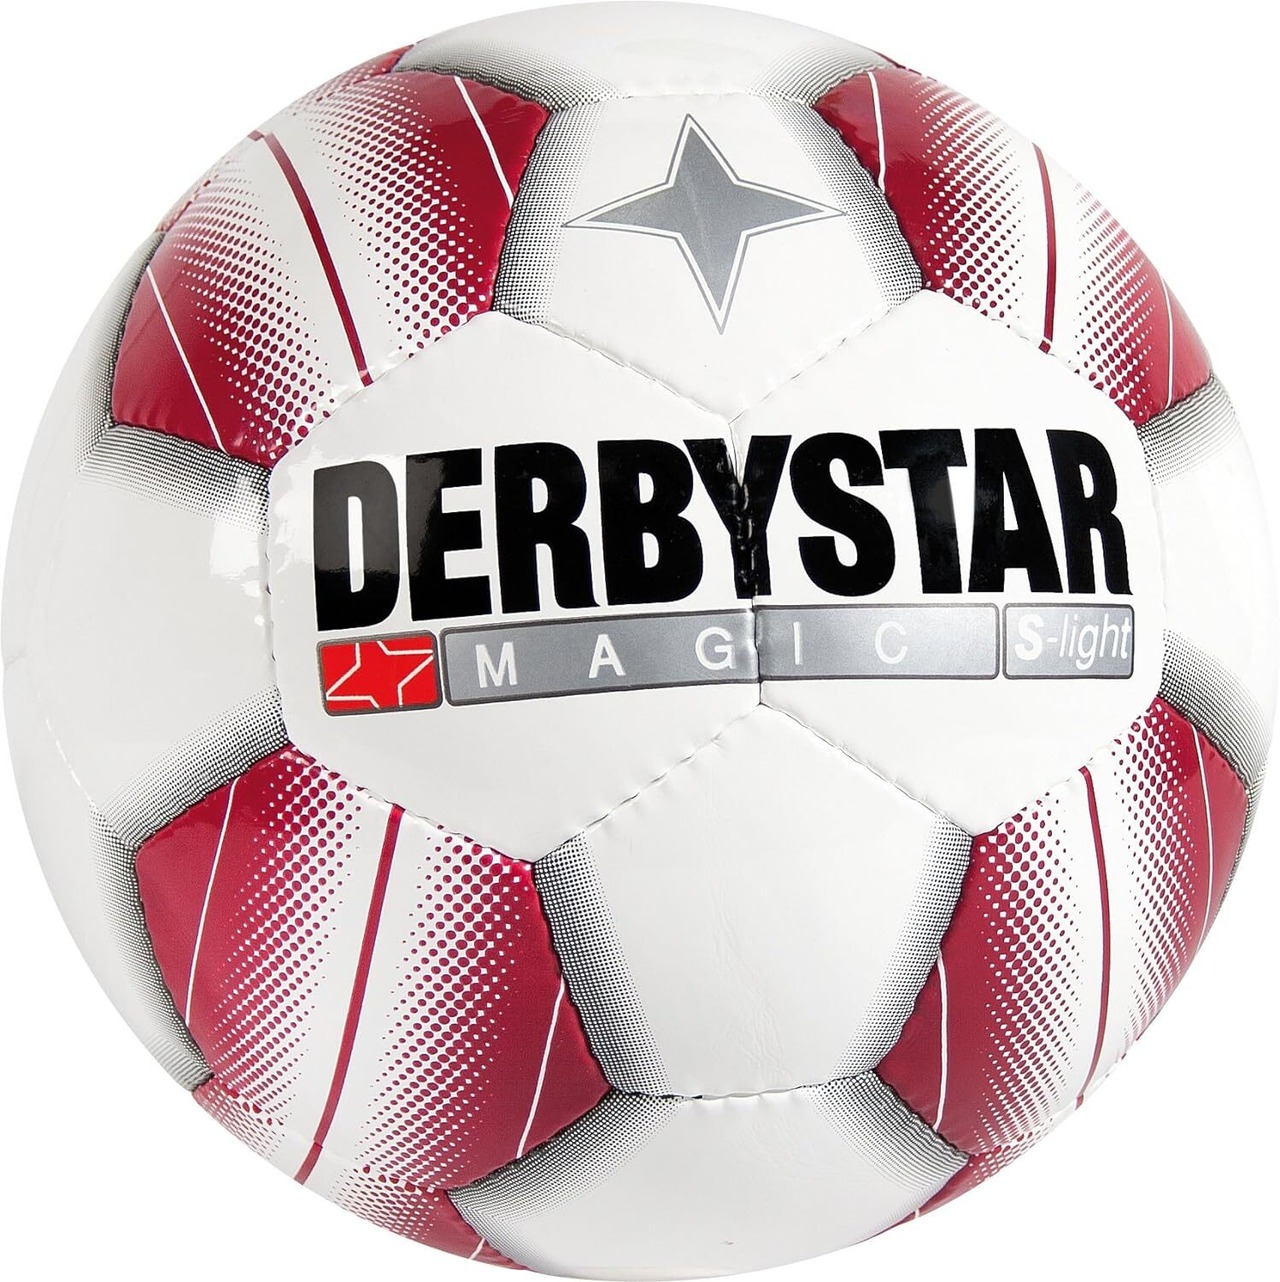 【公式】DERBYSTAR(ダービースター) サッカーボール 4号軽量球 MAGIC(マジック) S-LIGHT PRO 小学生用